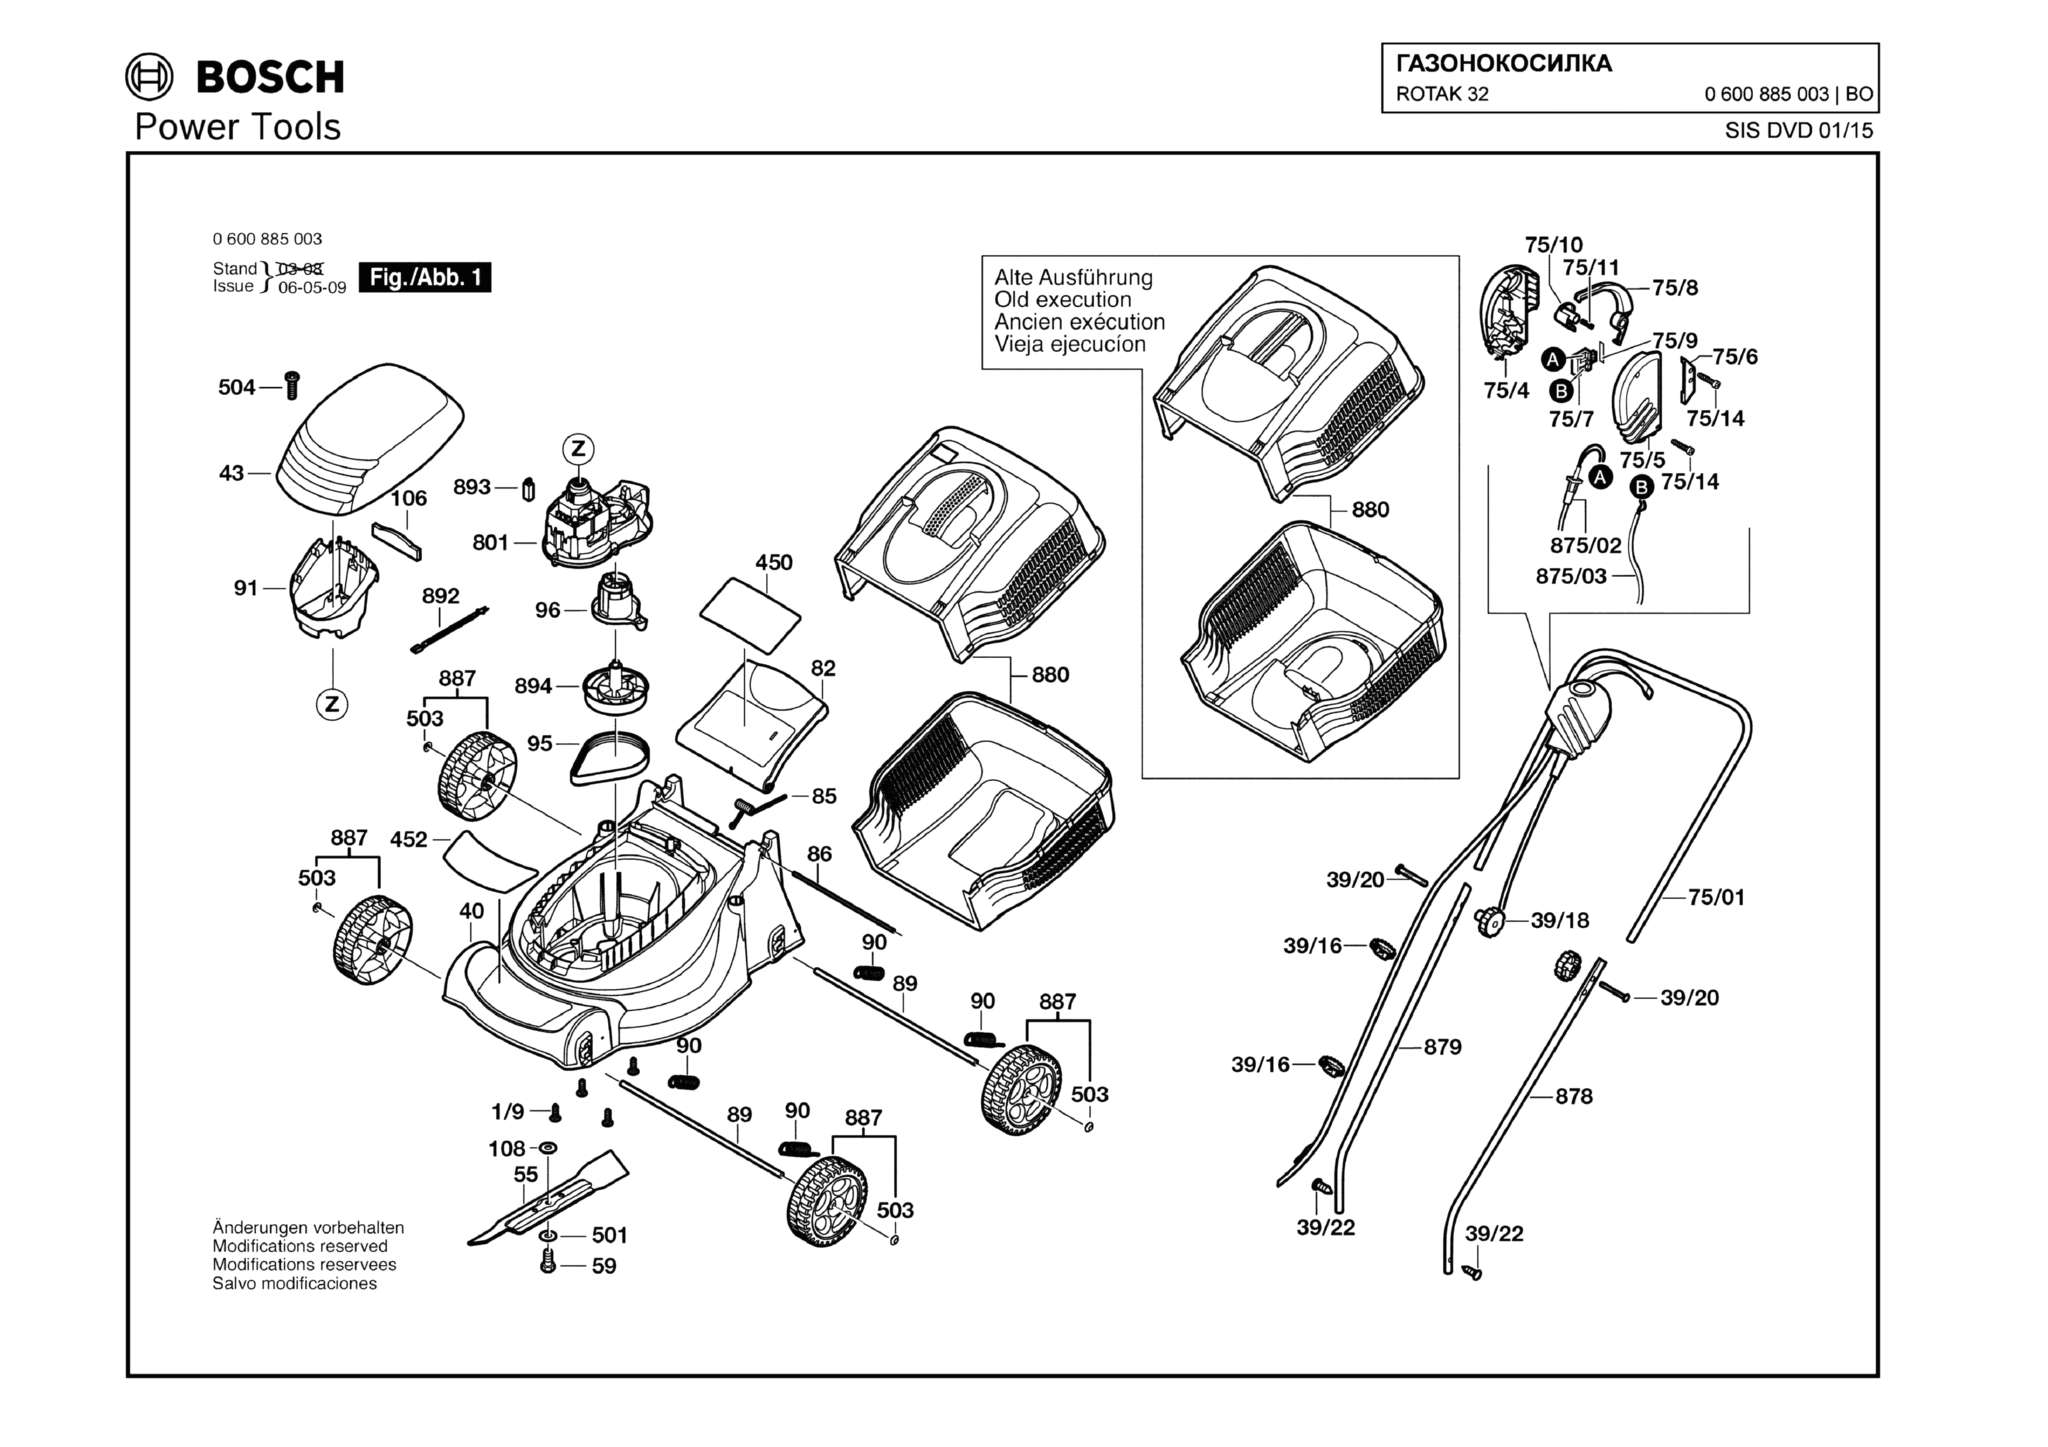 Запчасти, схема и деталировка Bosch ROTAK 32 (ТИП 0600885003)